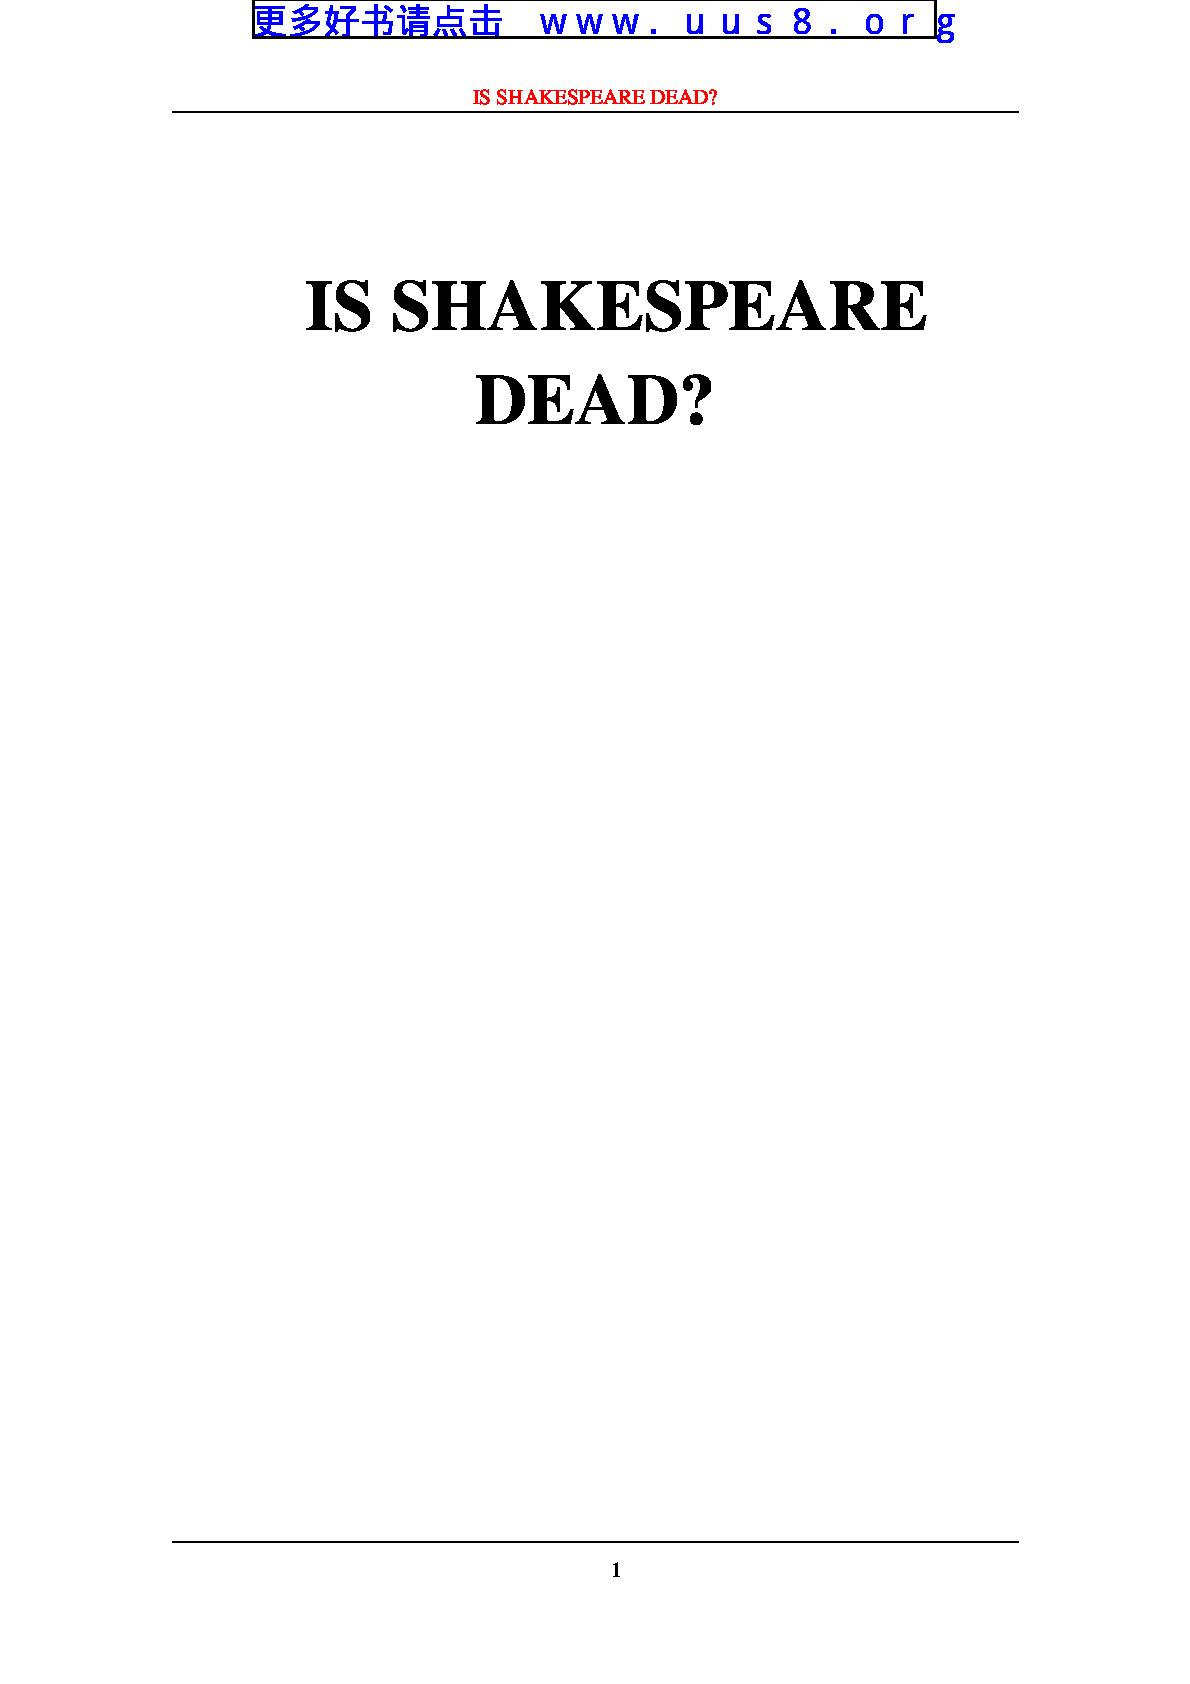 IS_SHAKESPEARE_DEAD(莎士比亚死了吗？)